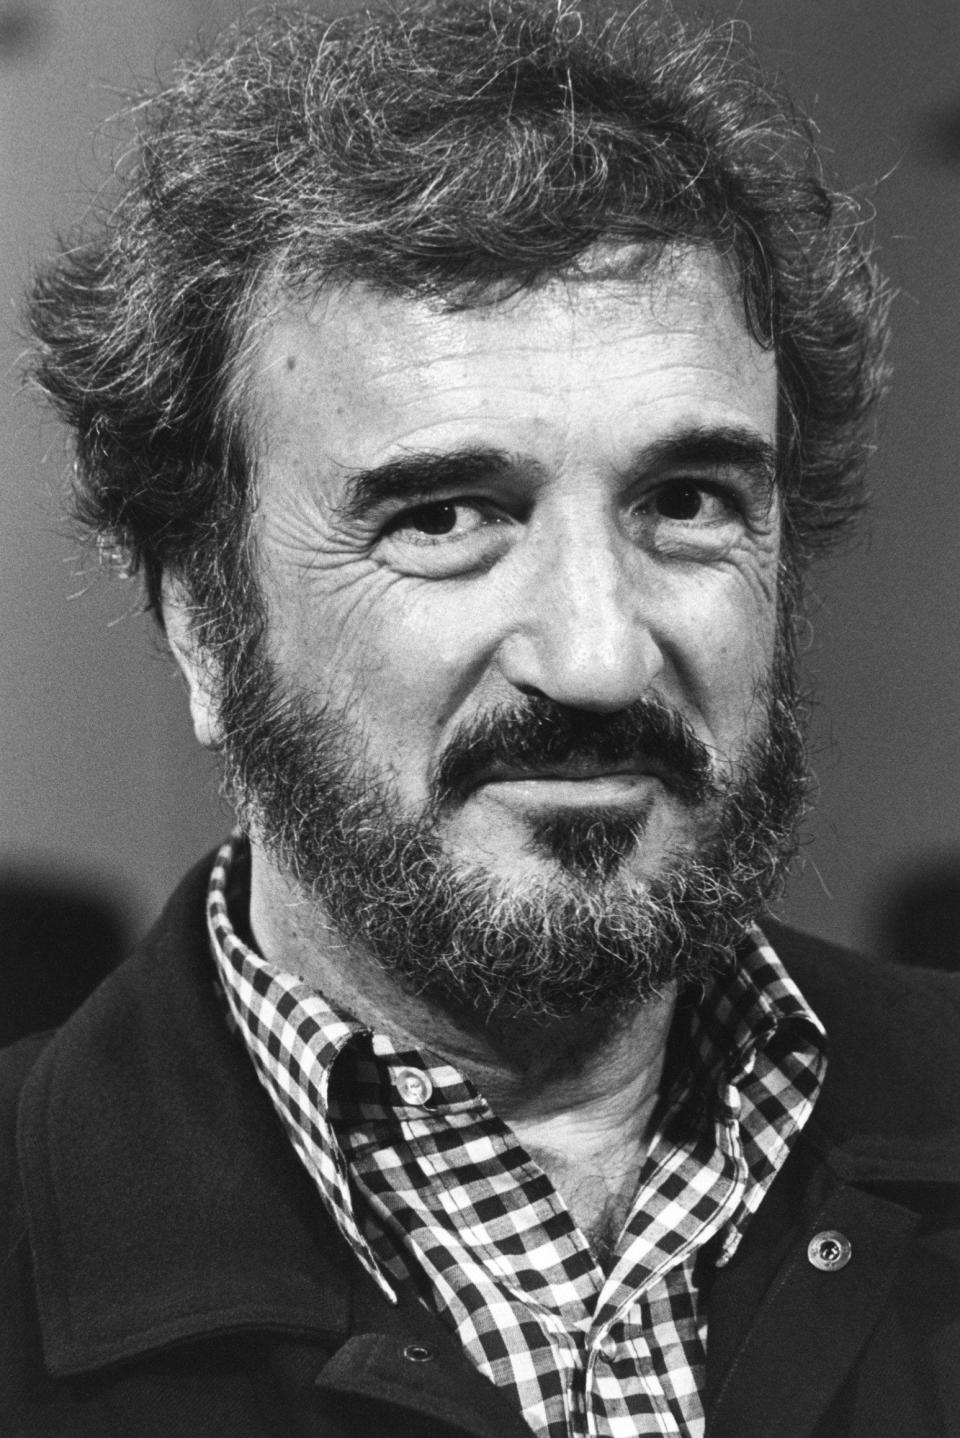 Carrière in 1980 - Louis MONIER/Gamma-Rapho via Getty Images